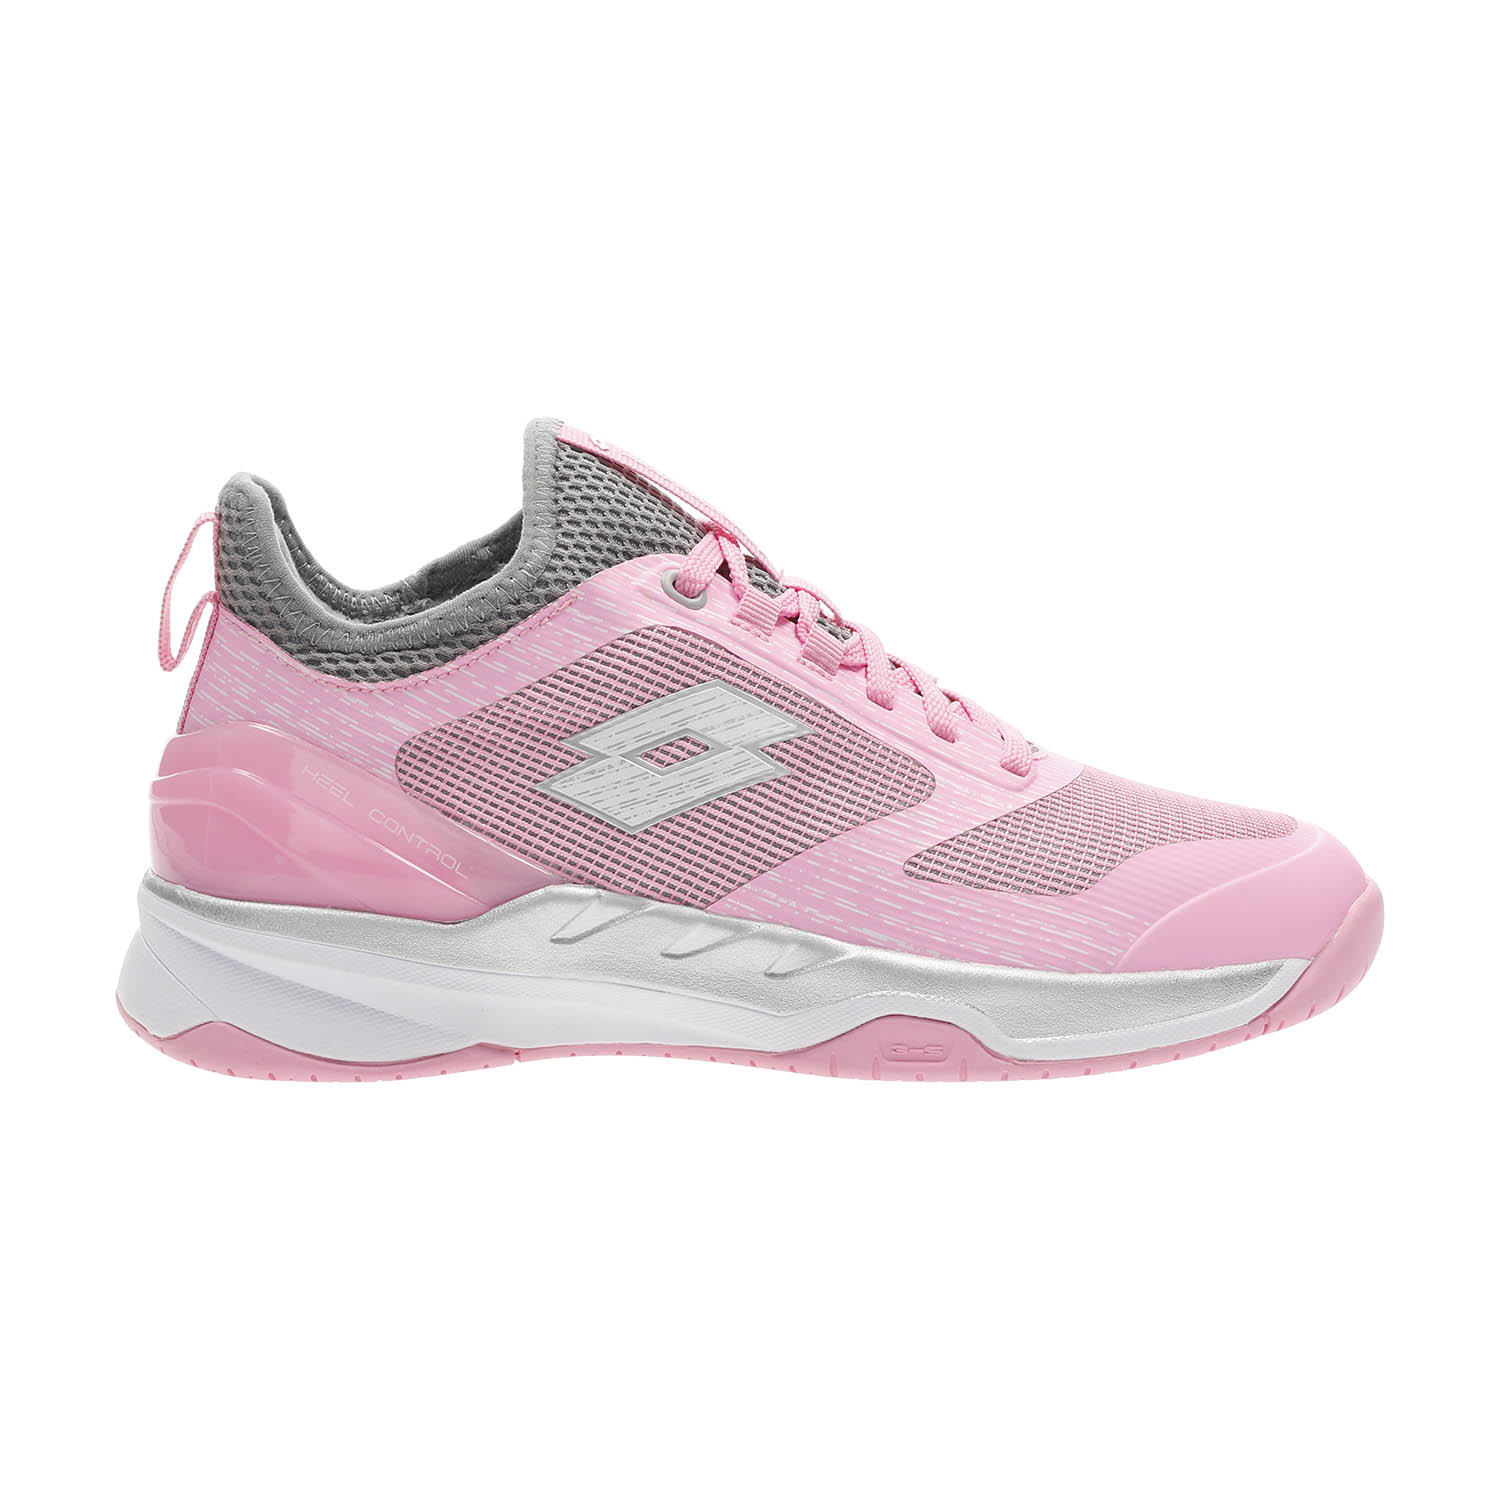 pink tennis shoe